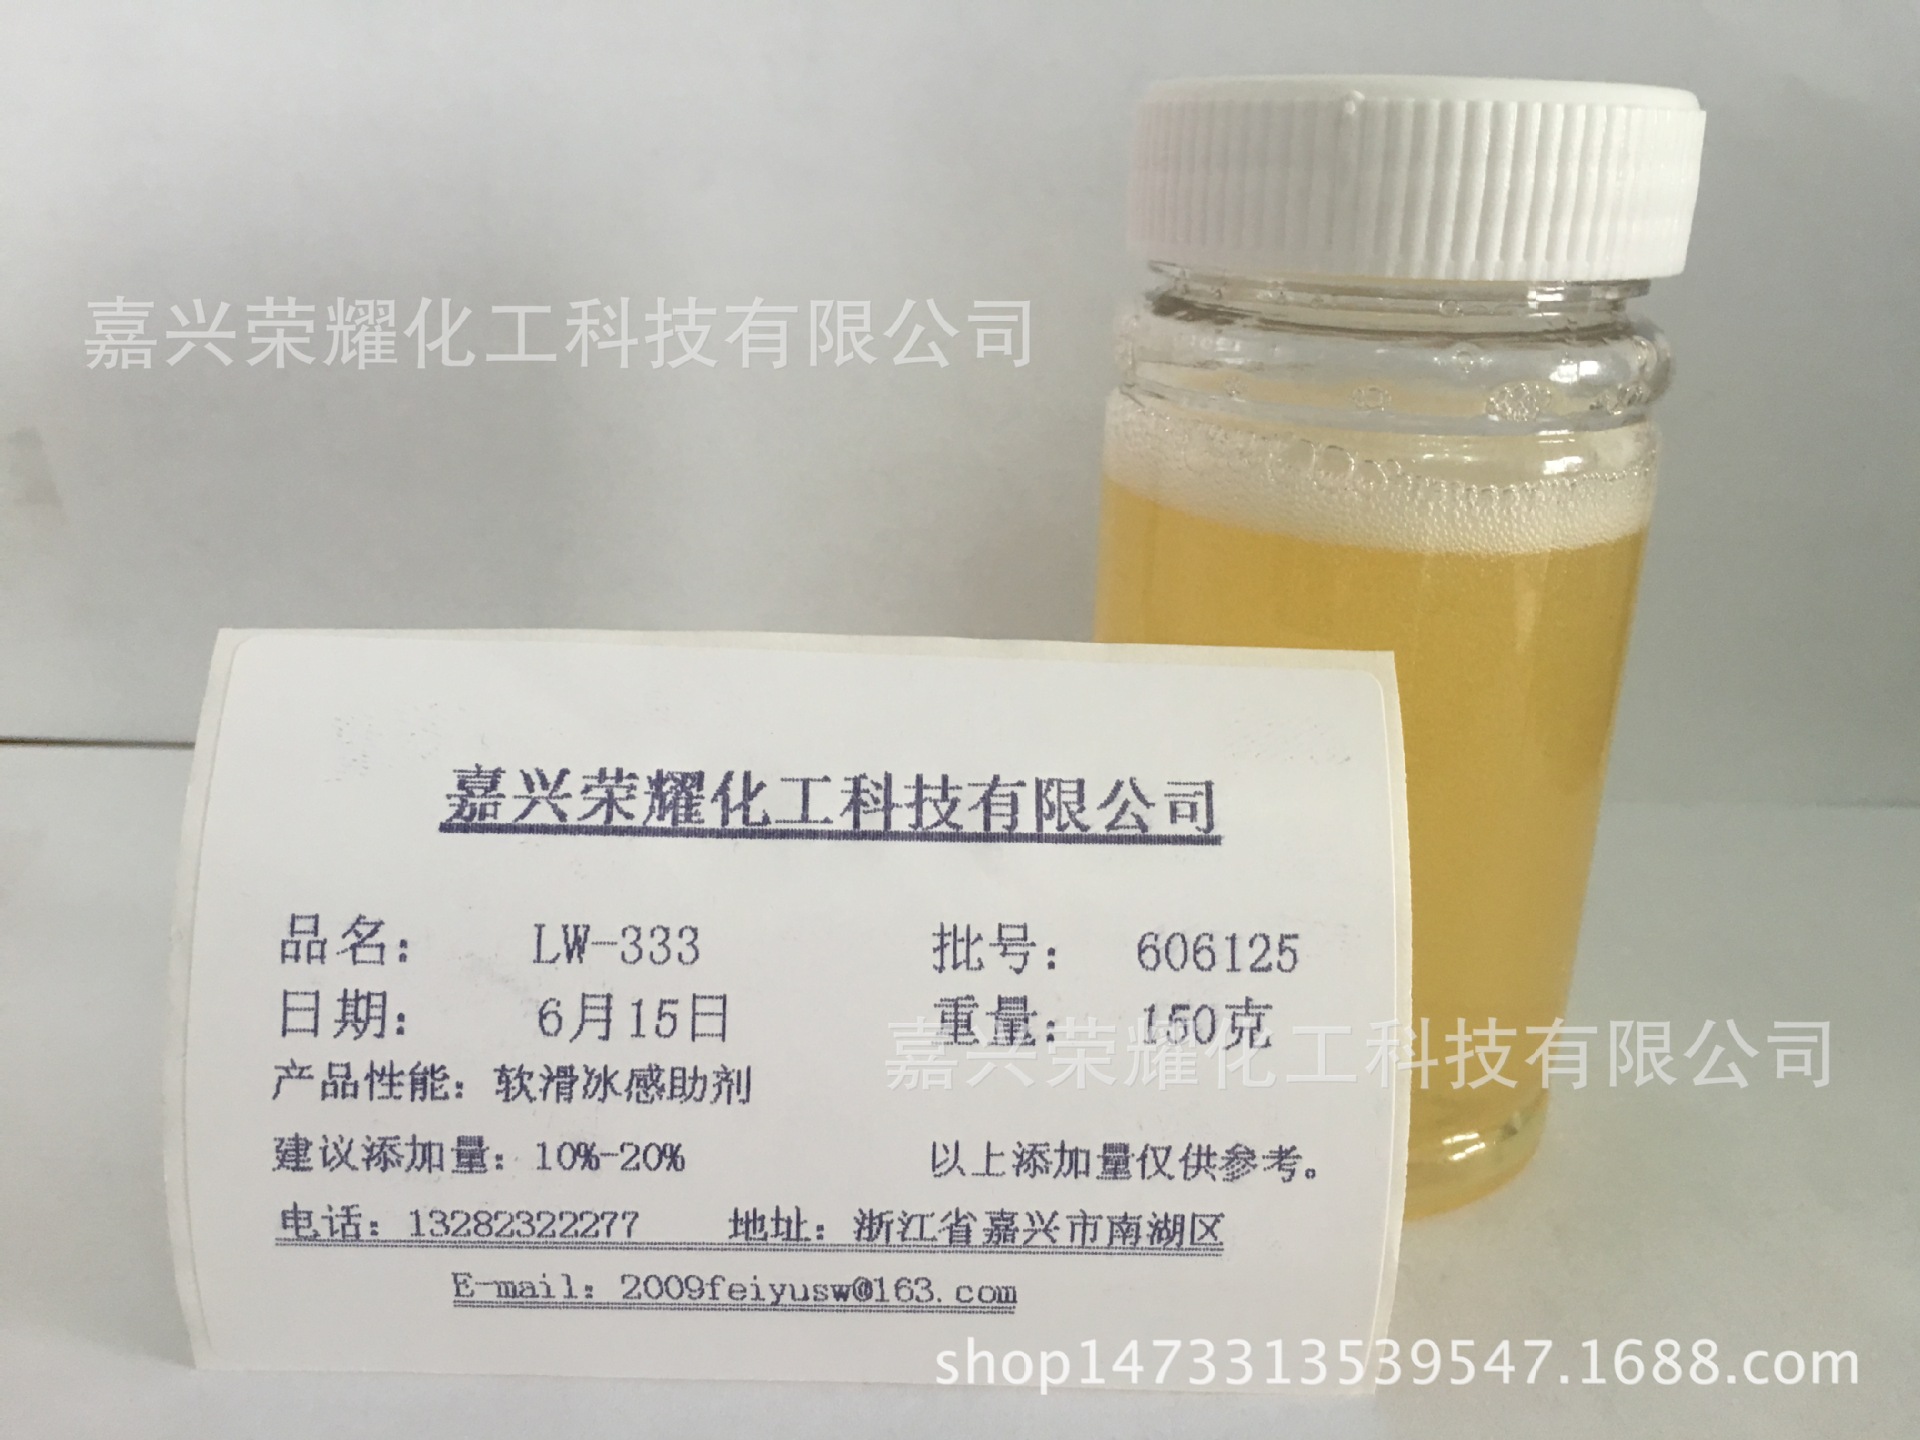 水性材料添加型助剂 仿手感助剂(皮革Q感助剂) LW-8180